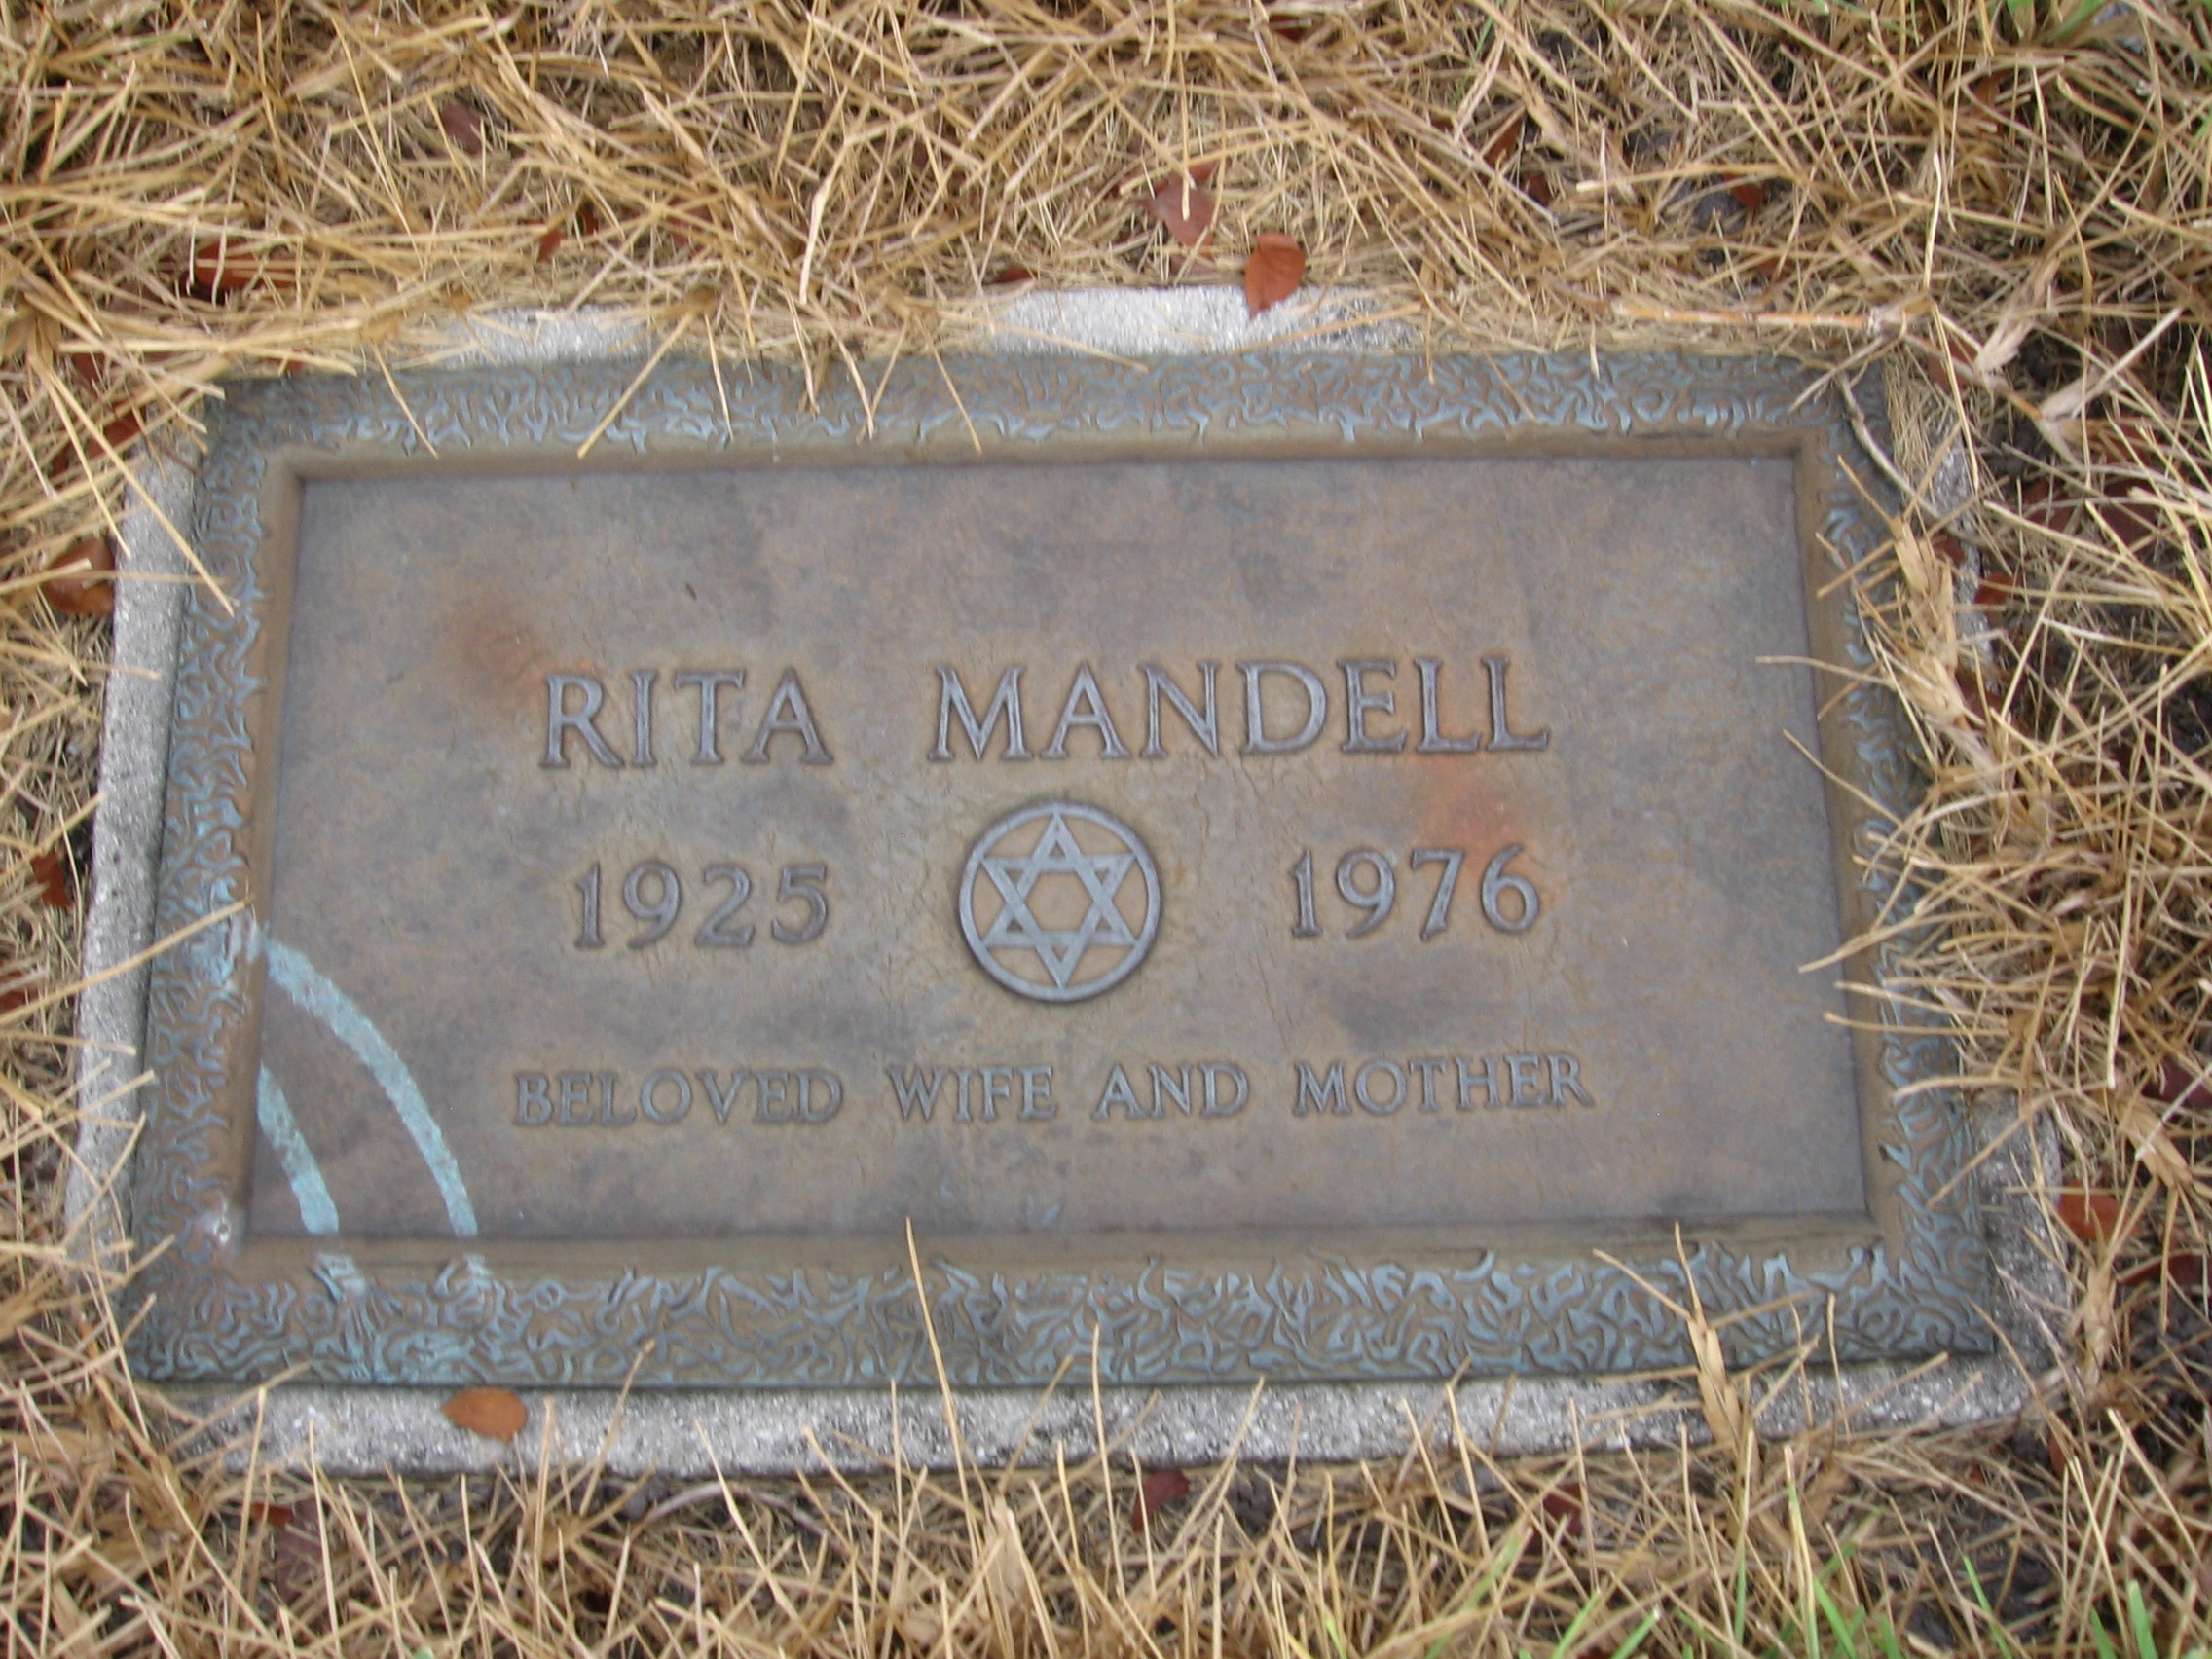 Rita Mandell